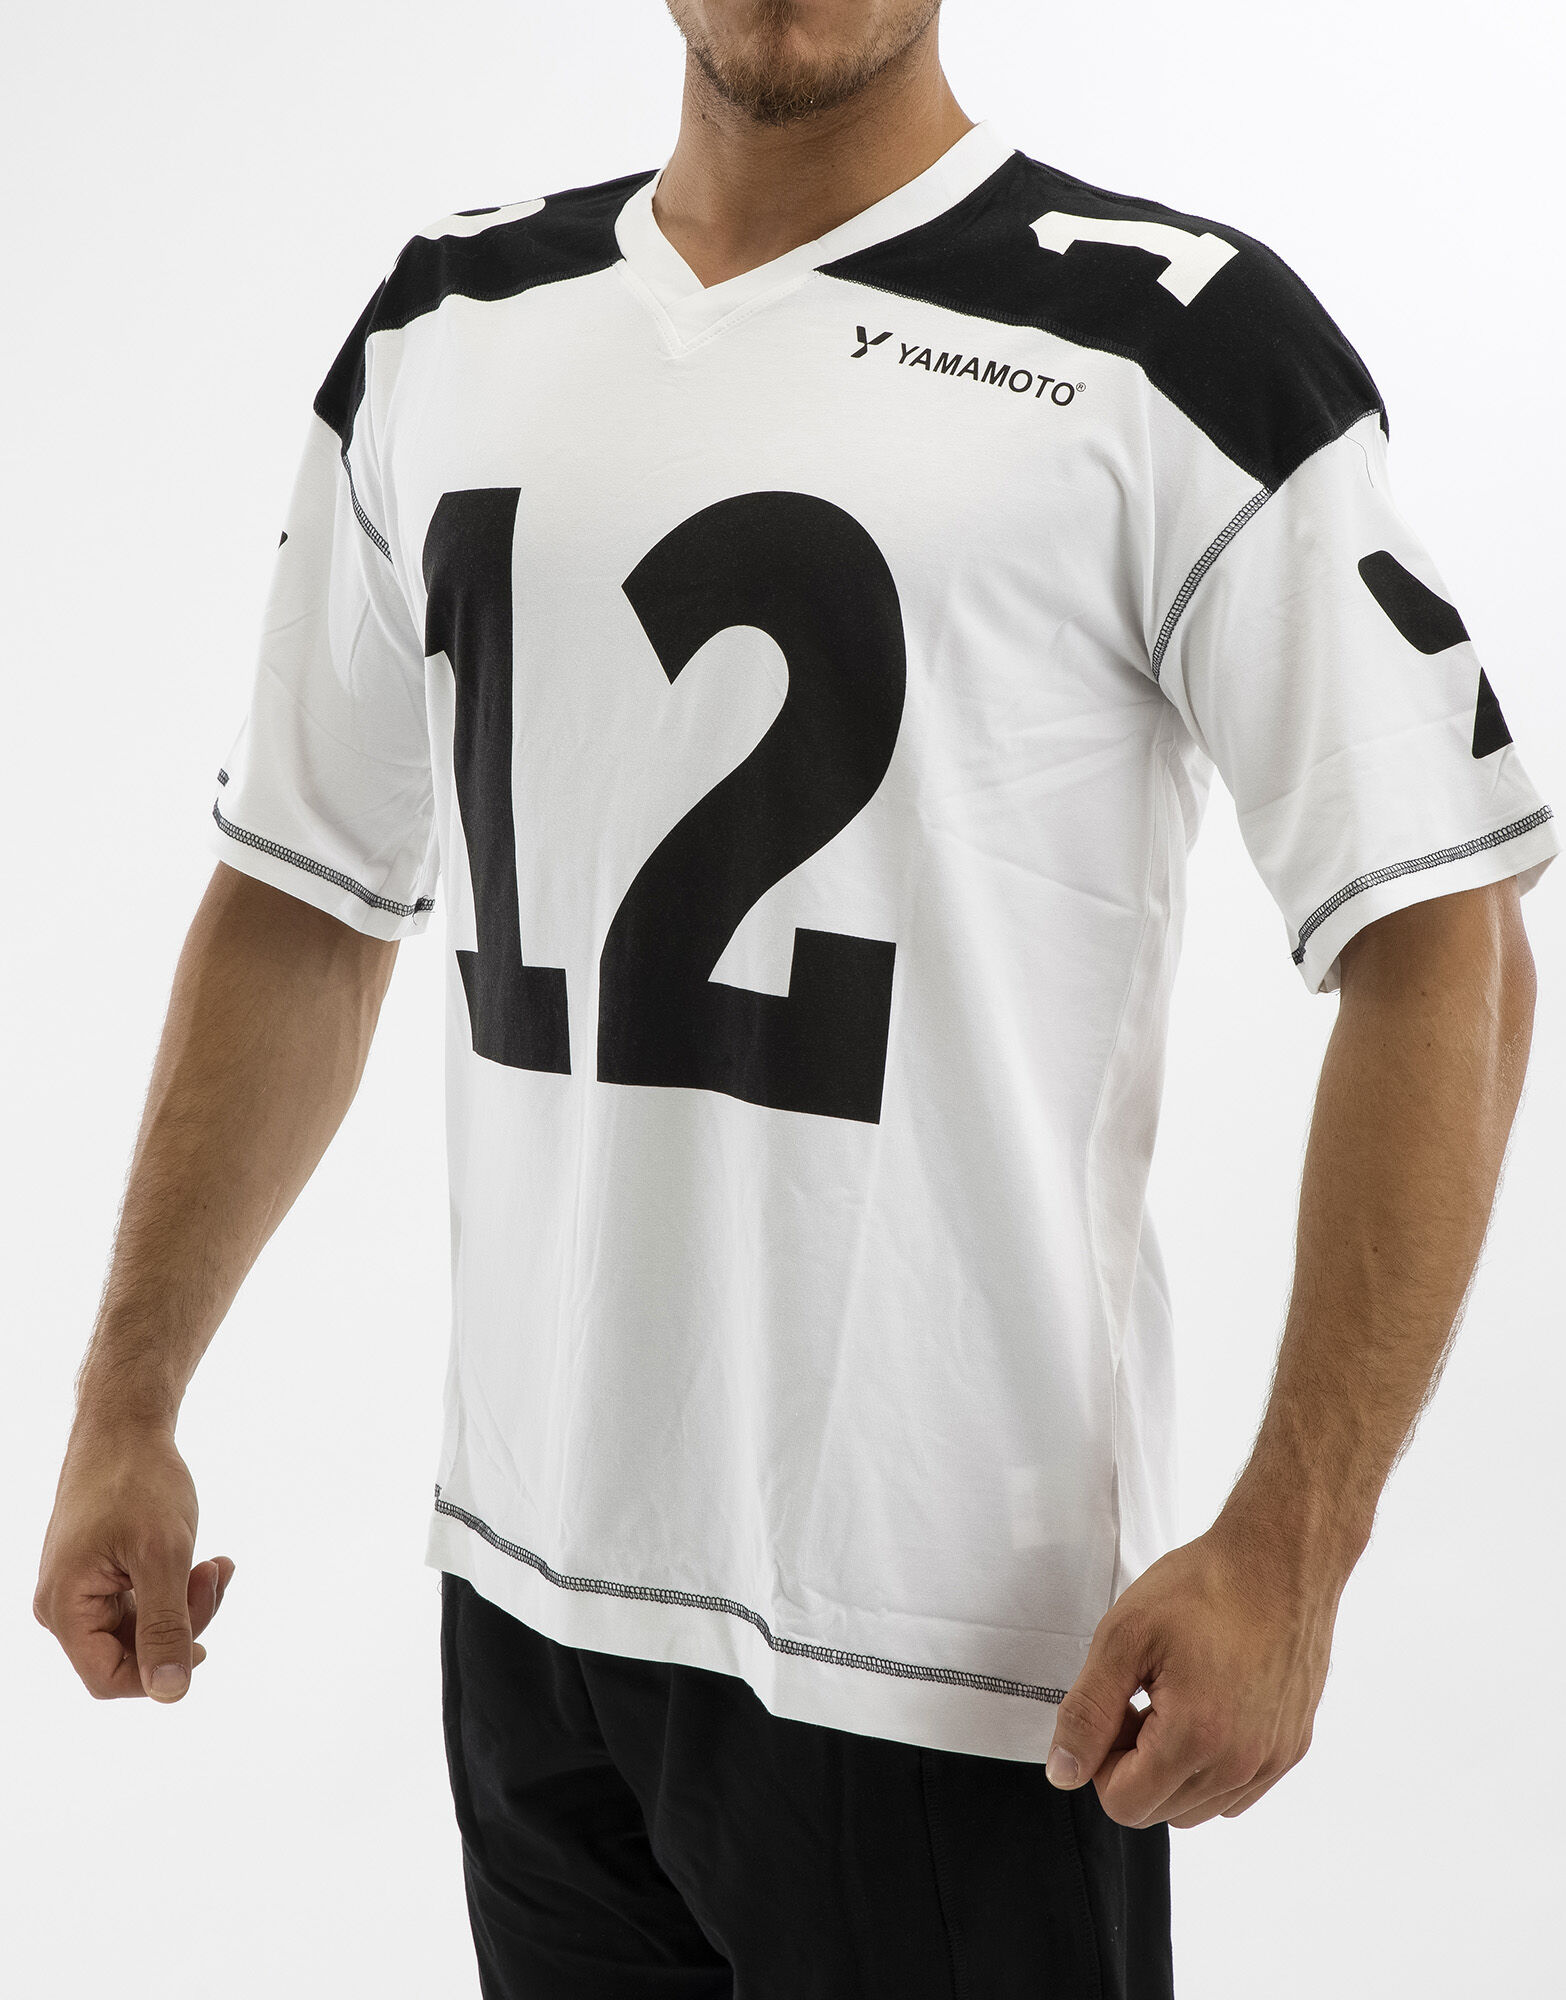 YAMAMOTO OUTFIT Man Football T-Shirt Colore: Bianco/nero Xxl